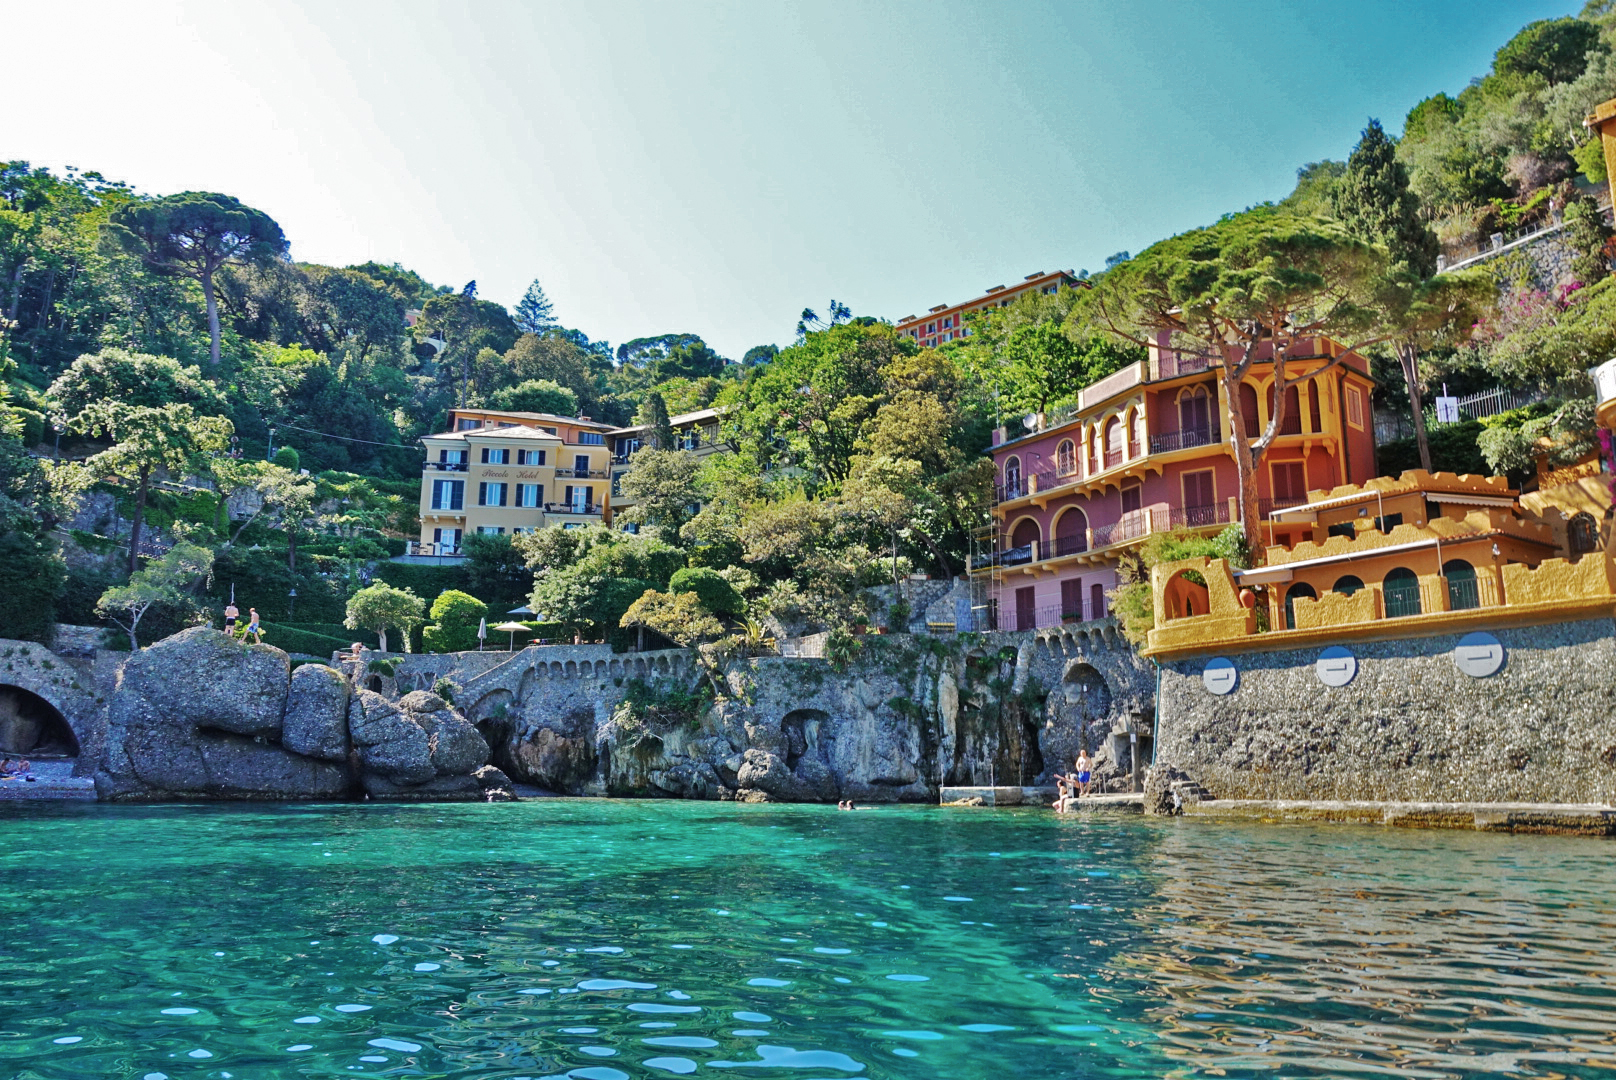 Some of the renowned villas in Portofino